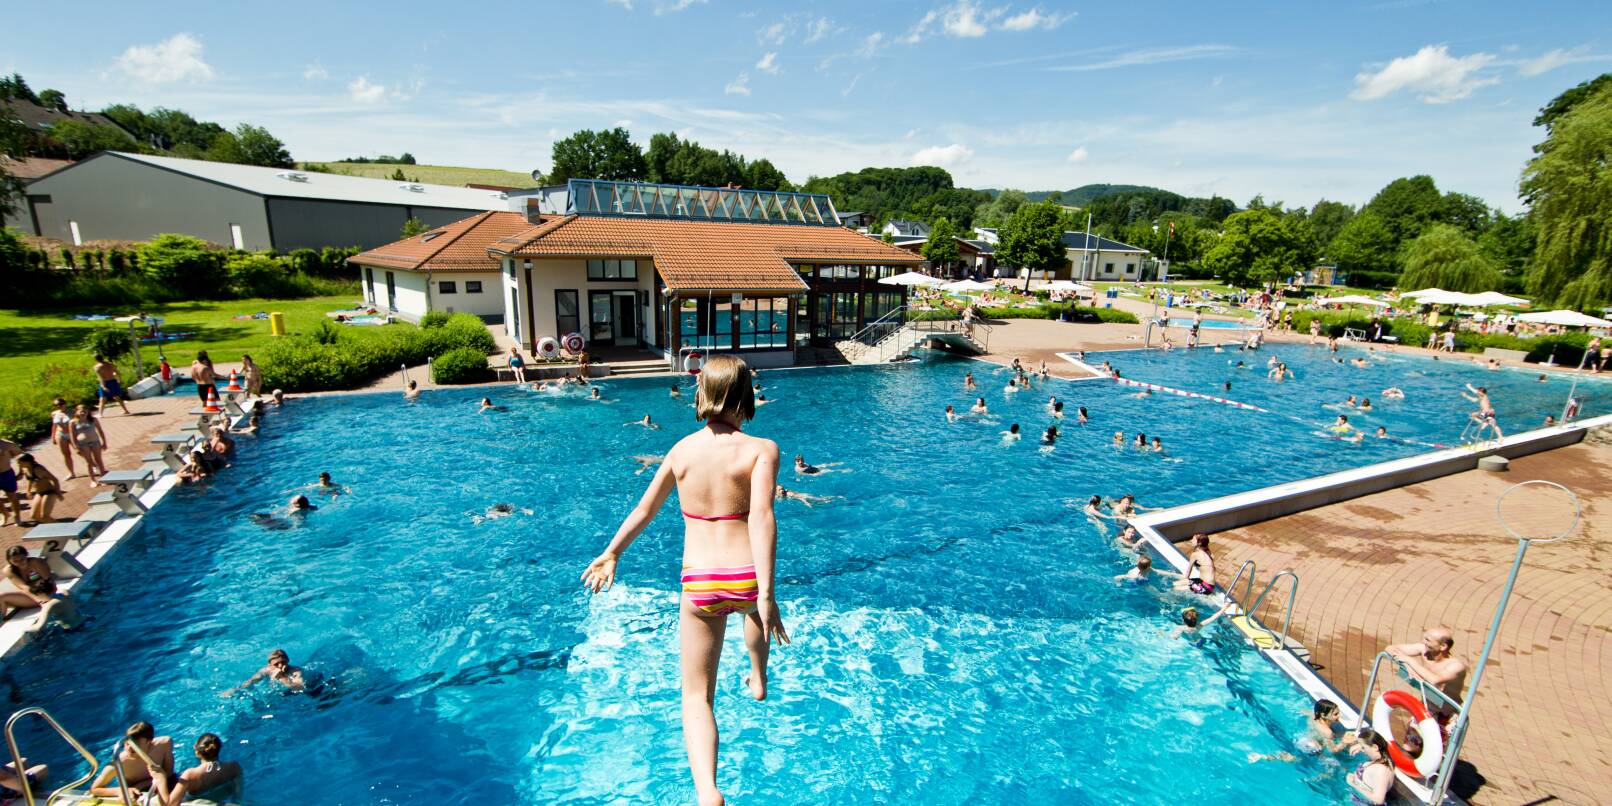 Am 9. Mai öffnet das Sommerbad Fürth. Onlinetickets können ab dem 30. April gekauft werden.